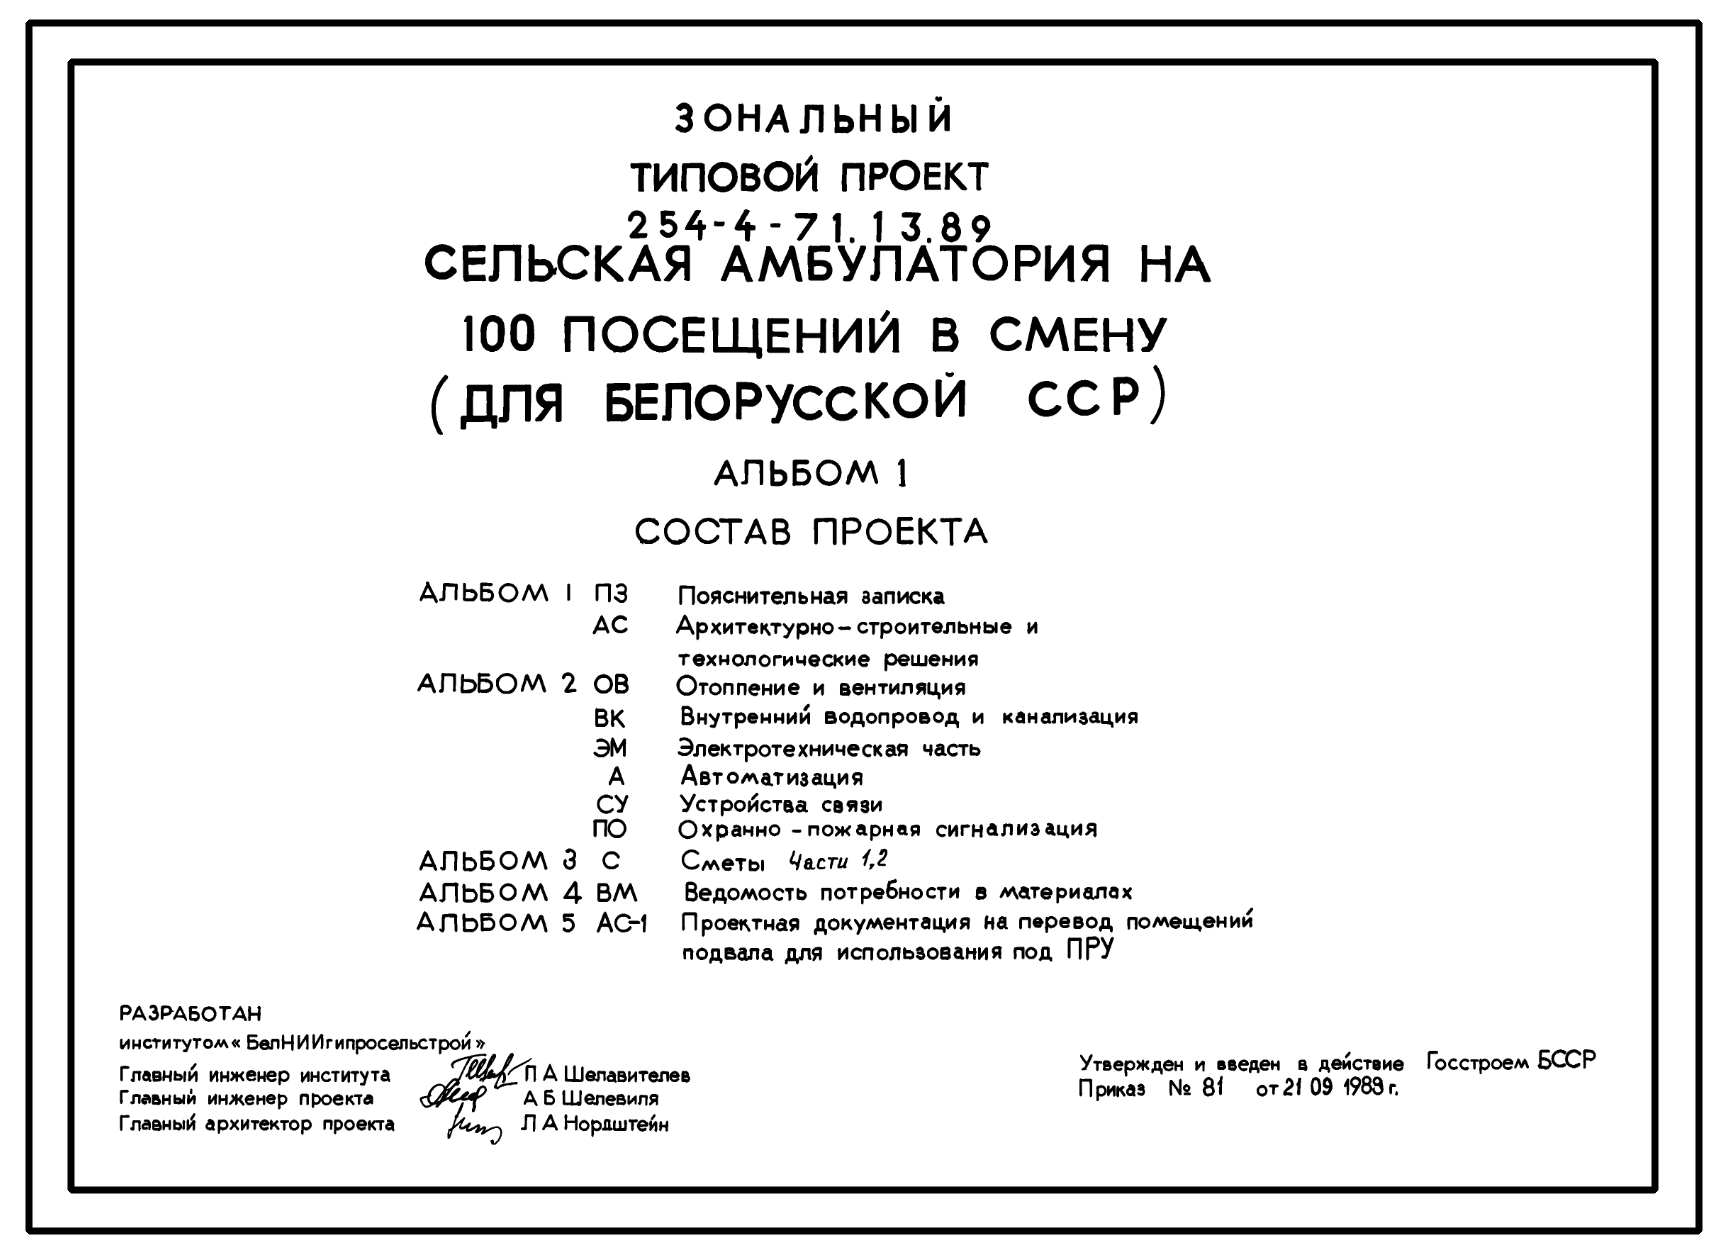 Состав Типовой проект 254-4-71.13.89 Сельская амбулатория на 100 посещений в смену (для Белорусской ССР)